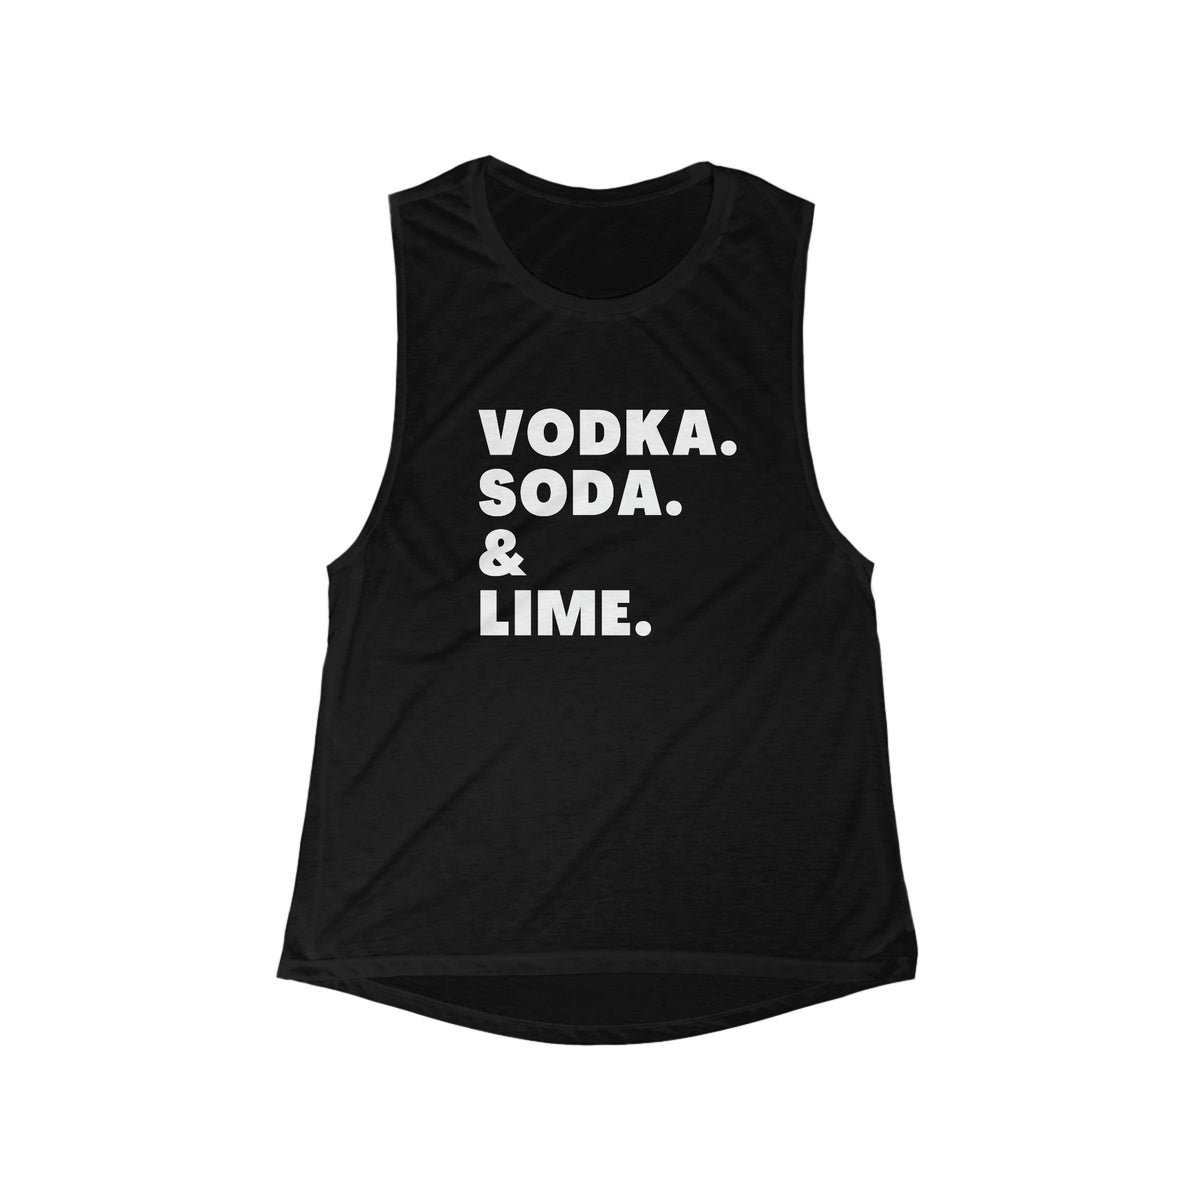 Vodka Soda & Lime tank in black.